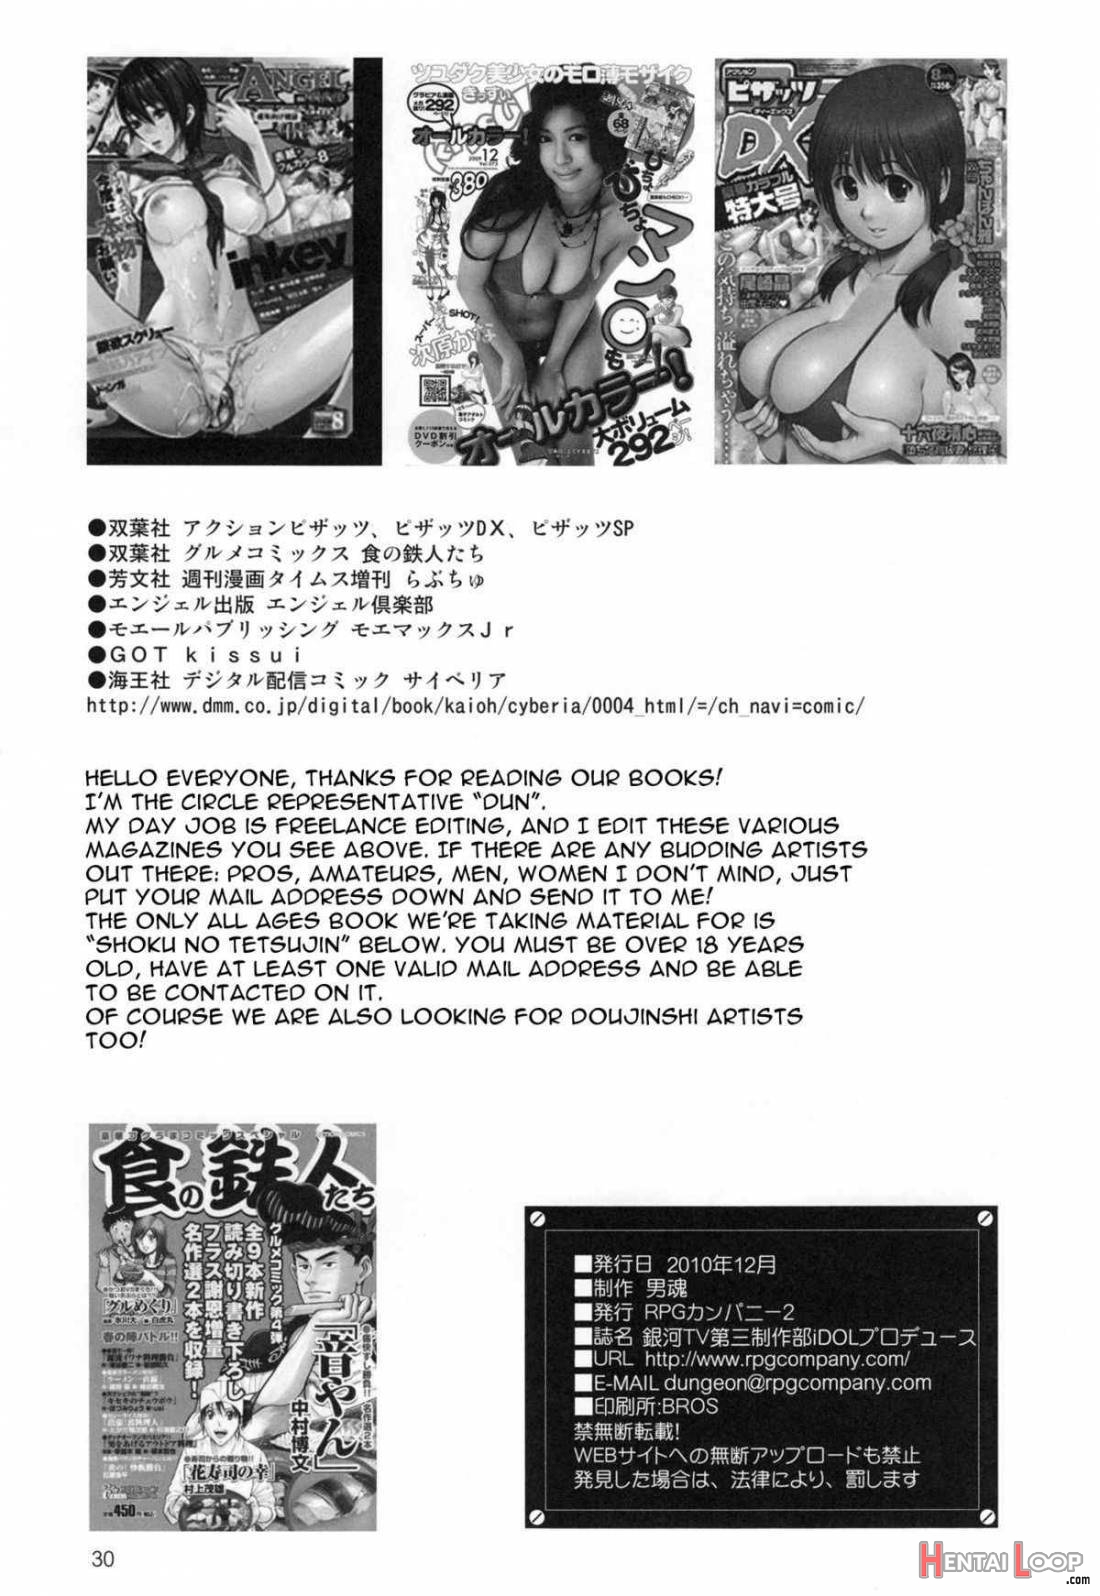 Ginga TV Daisan Seisakubu iDOL Produce page 30